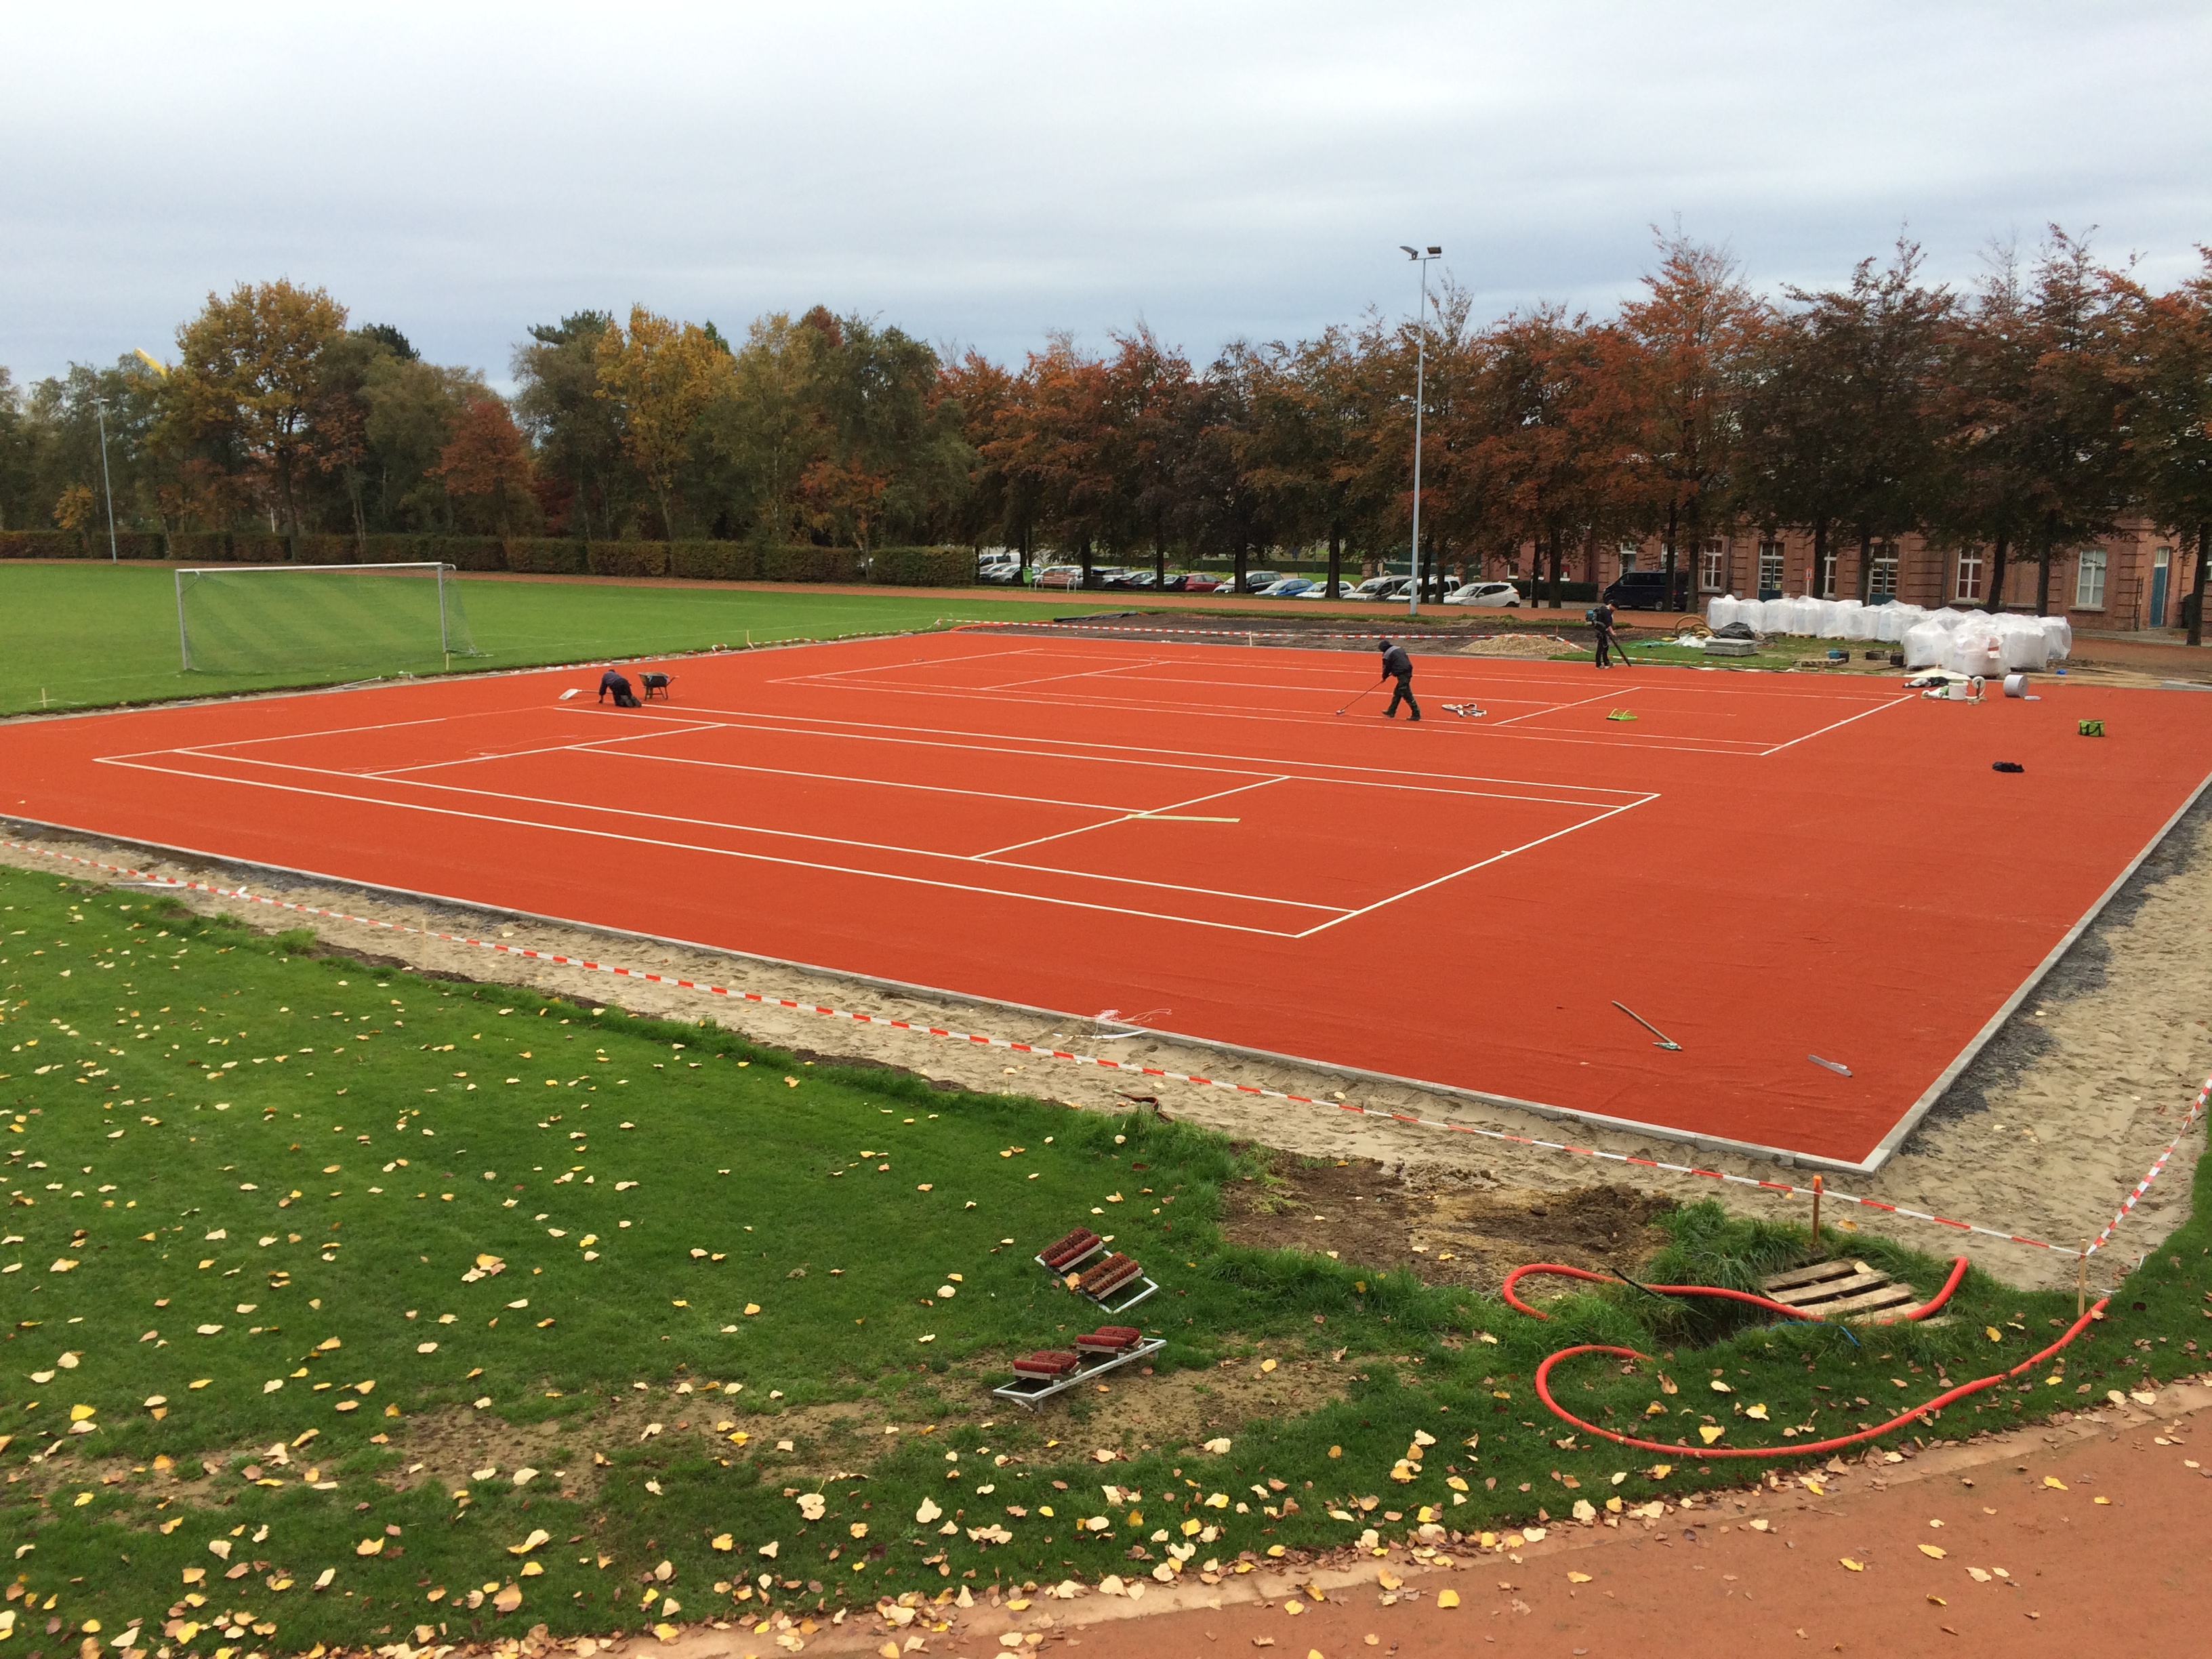 Tennisclub Hooglede Gits